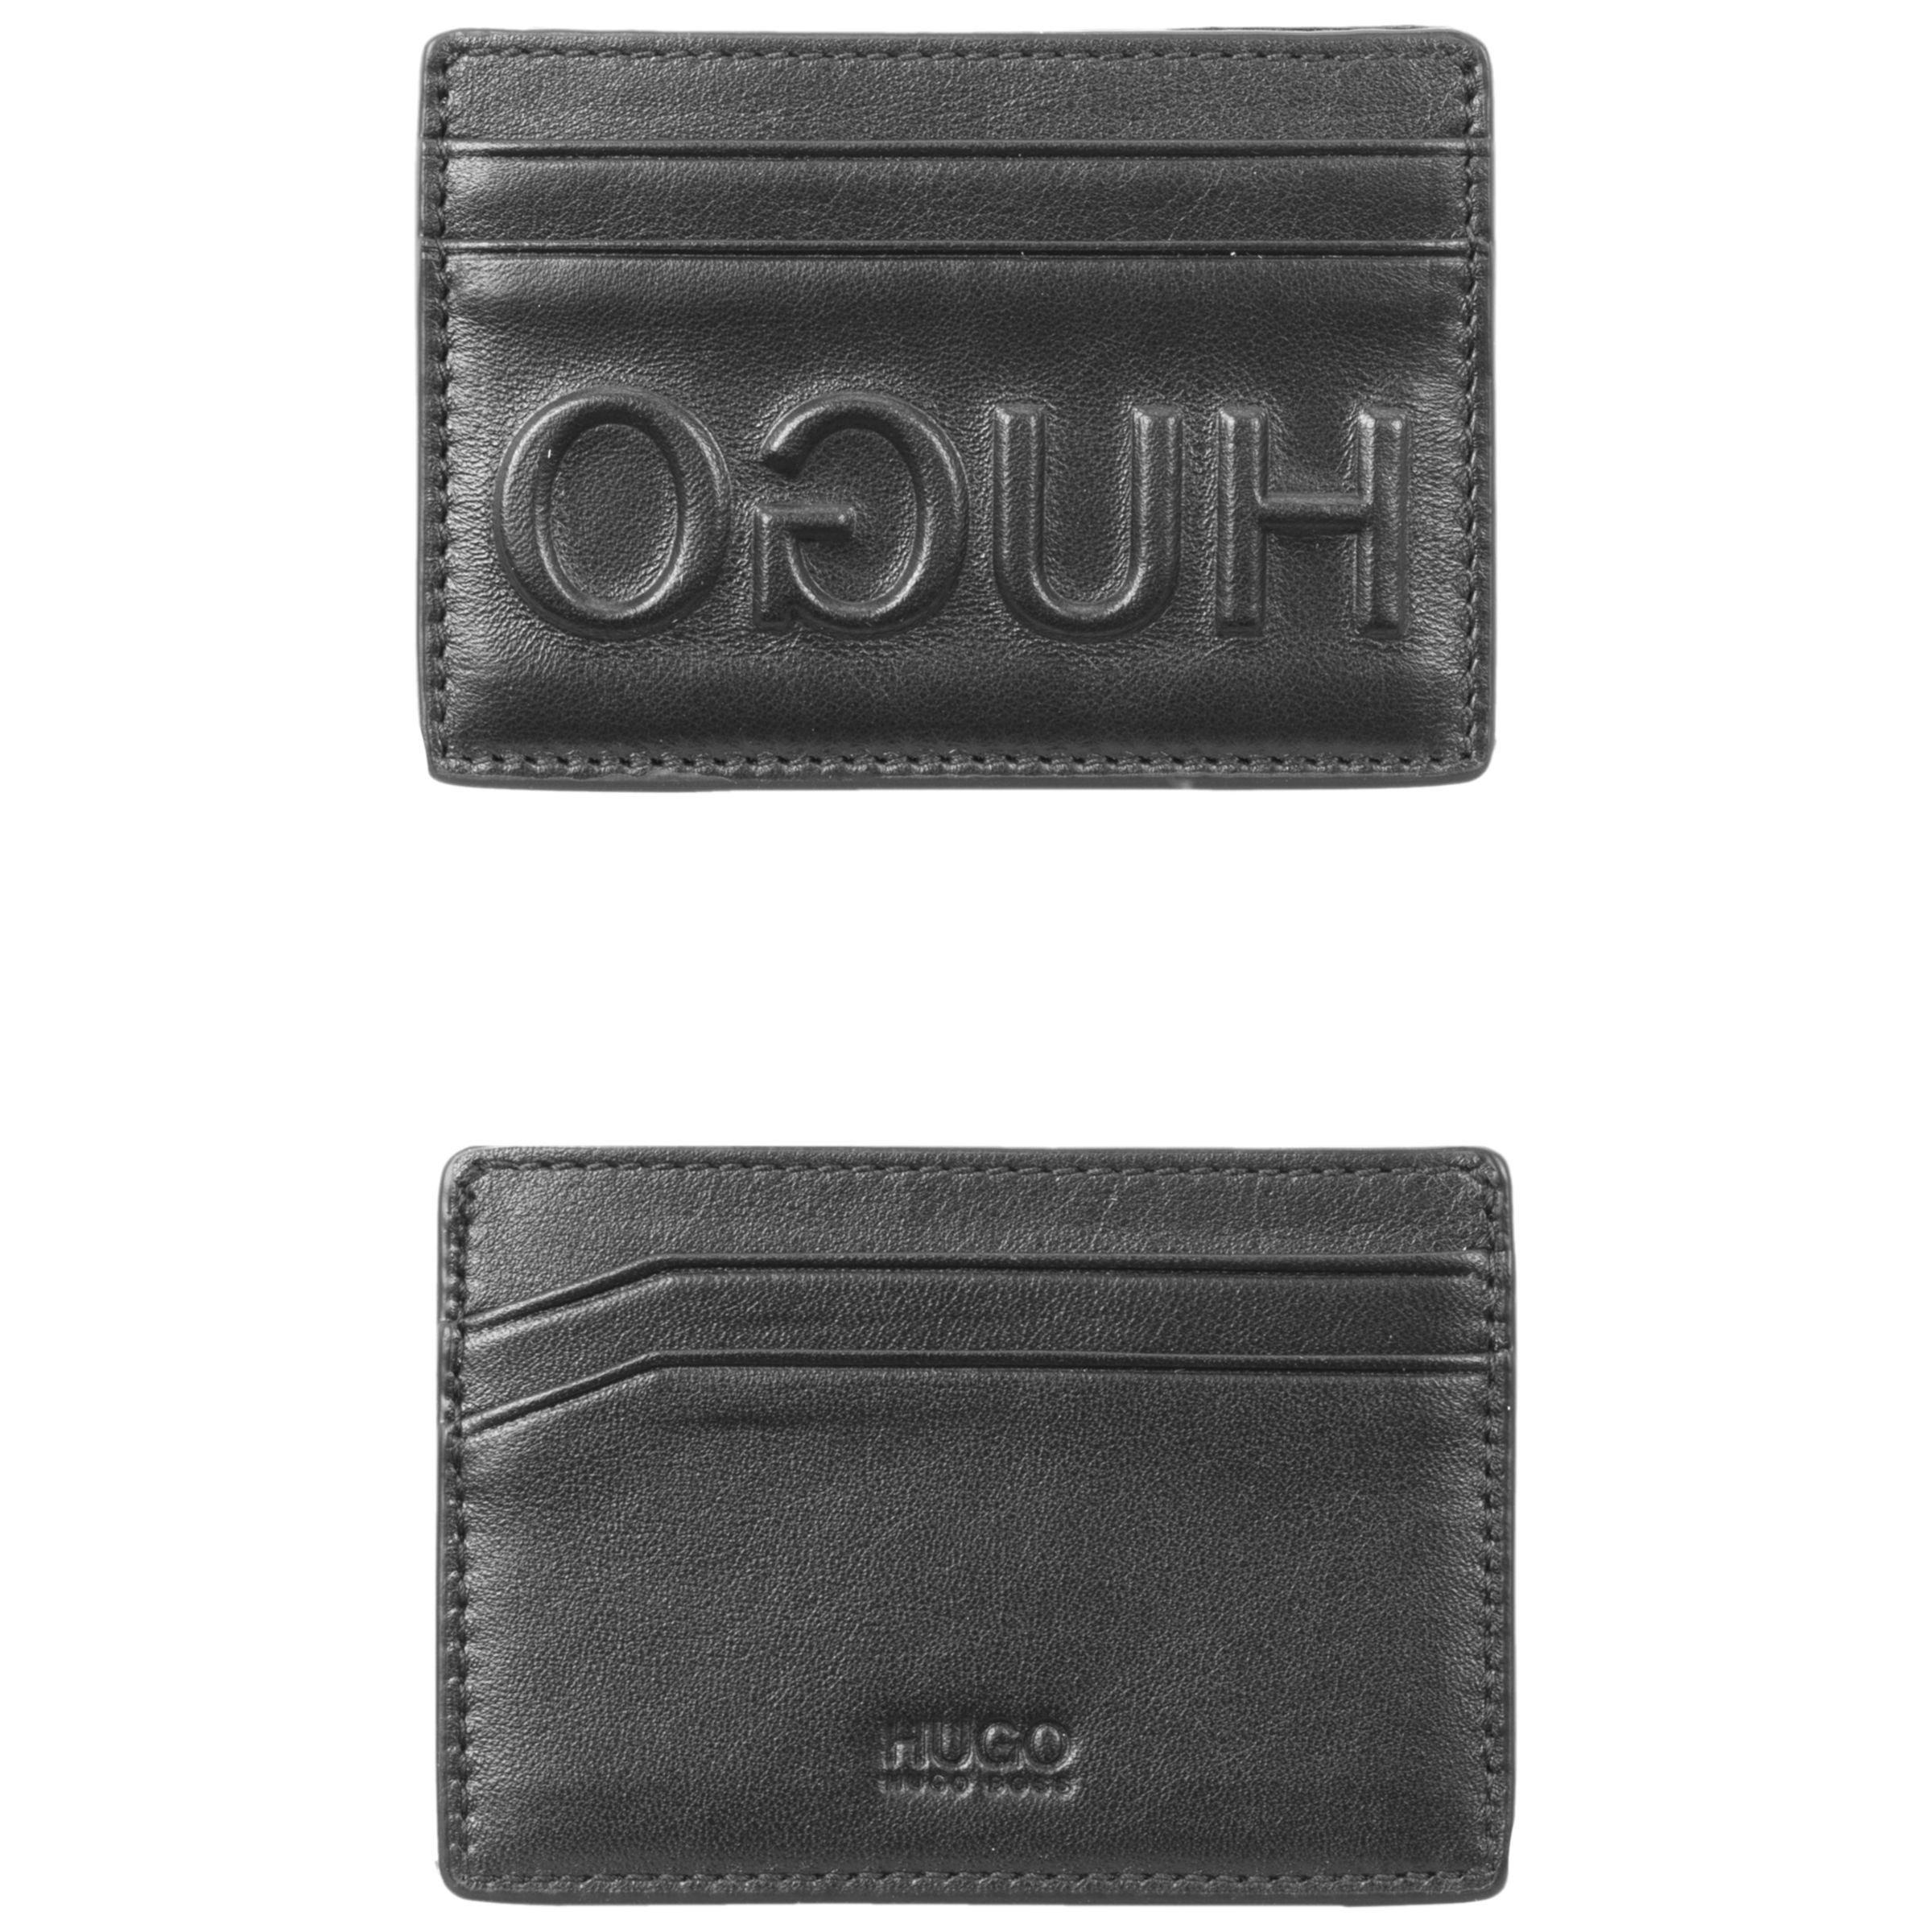 hugo boss wallets